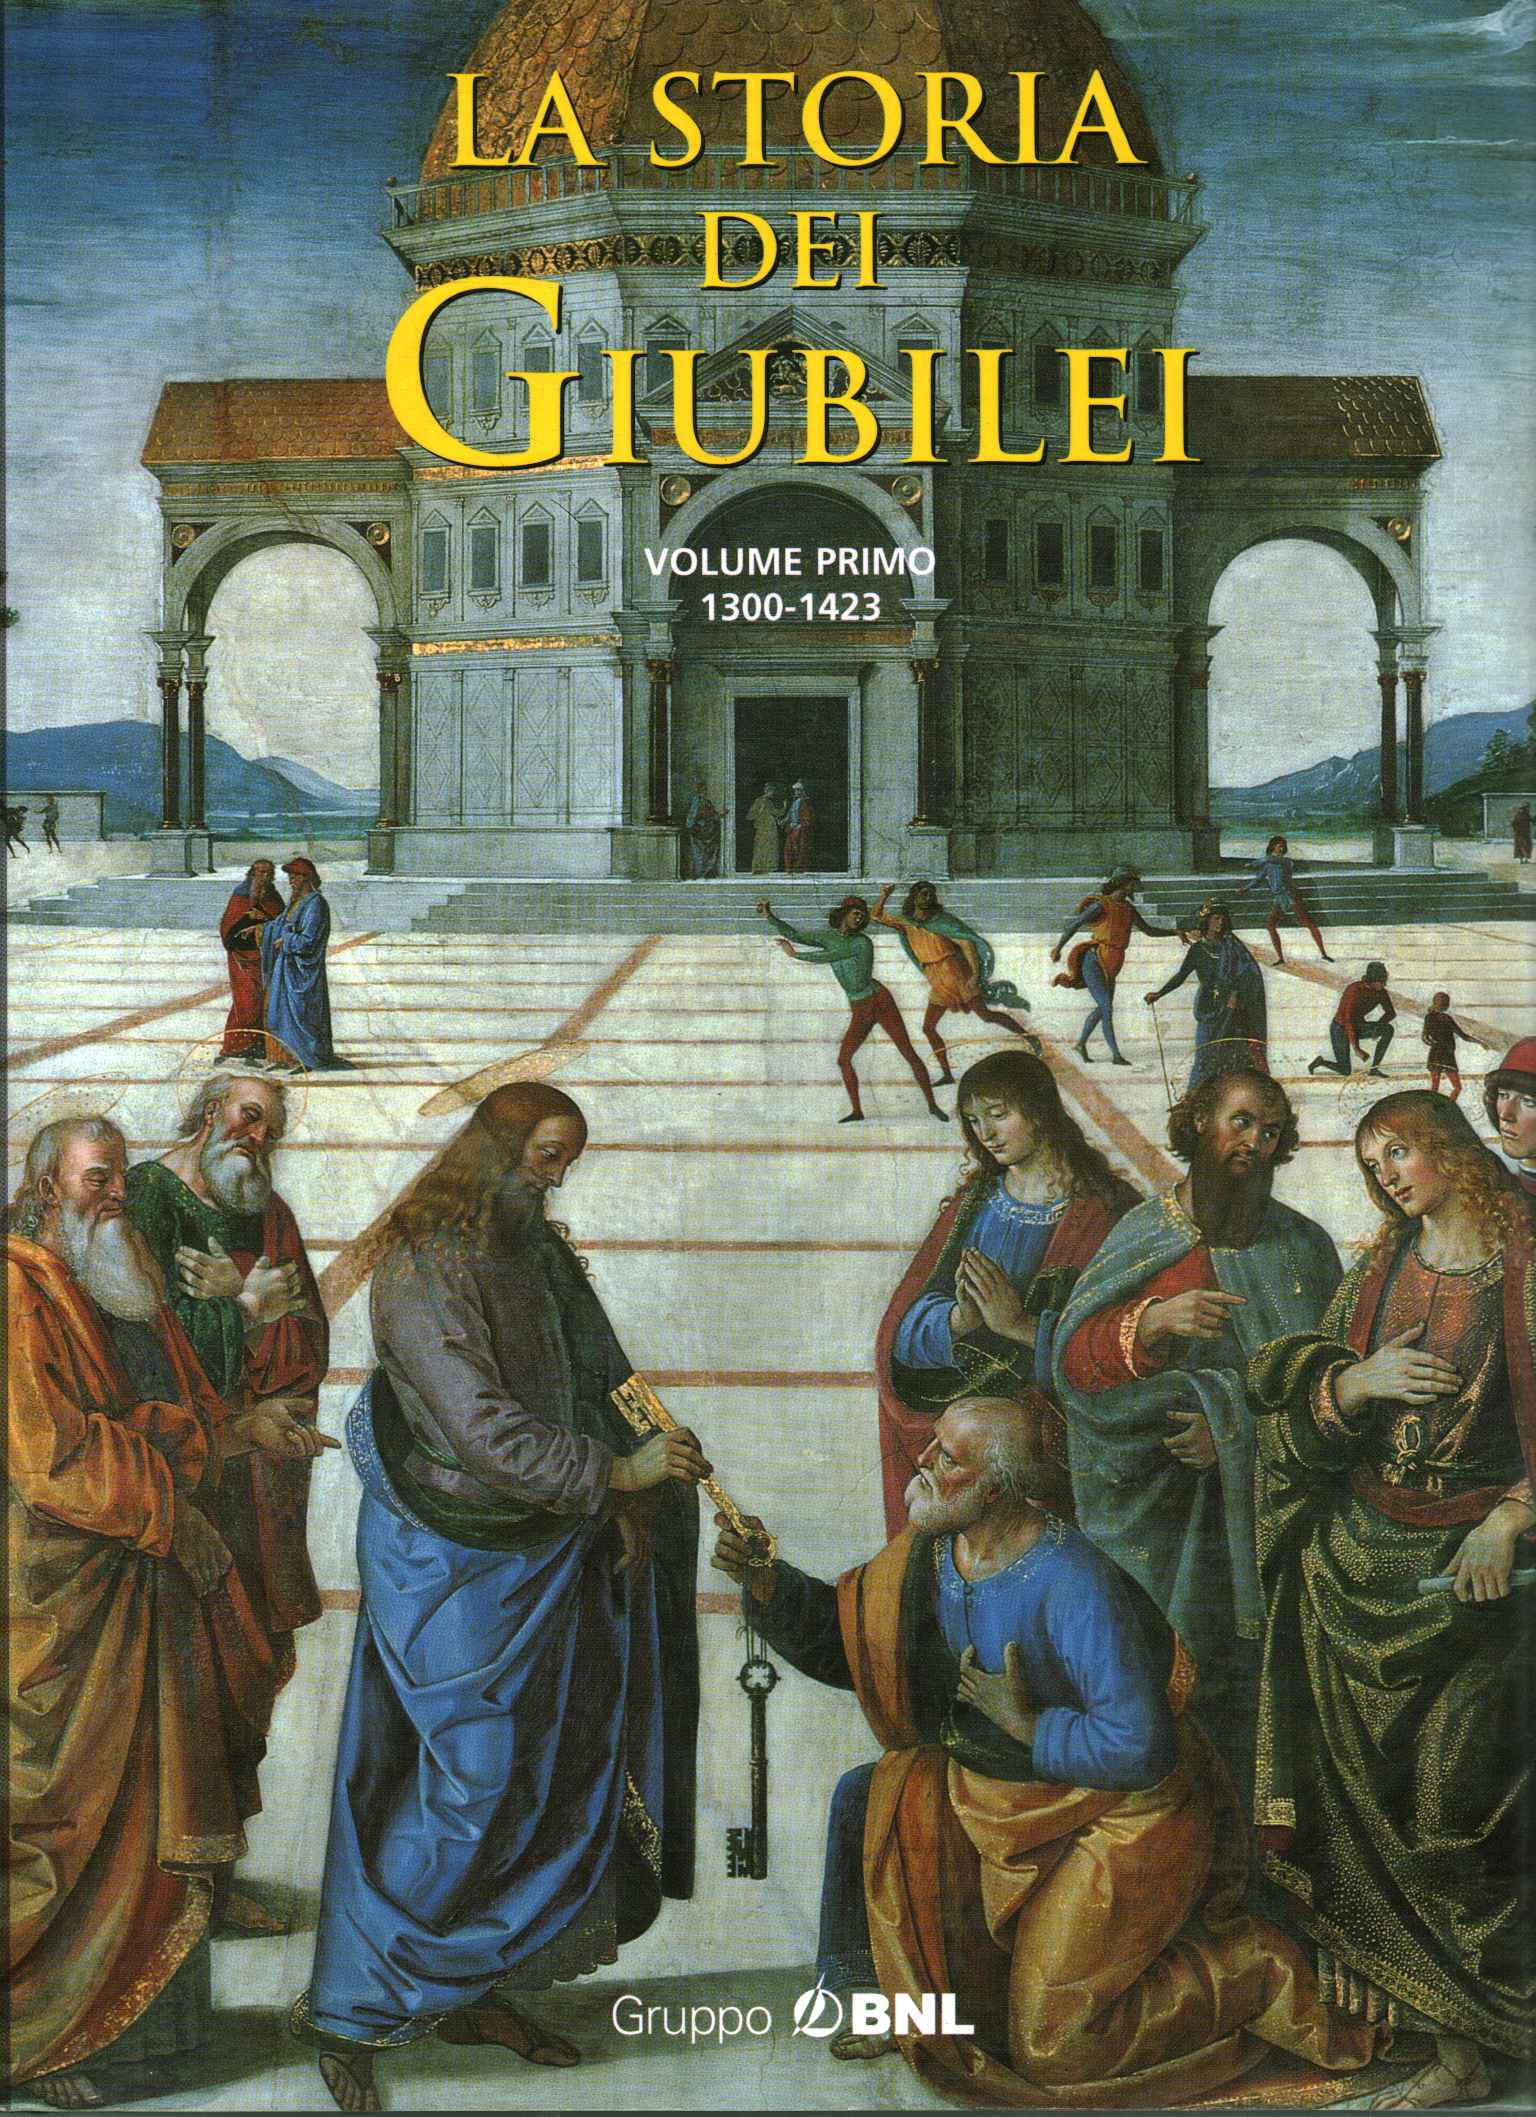 La storia dei Giubilei 1300-1423 (Volume